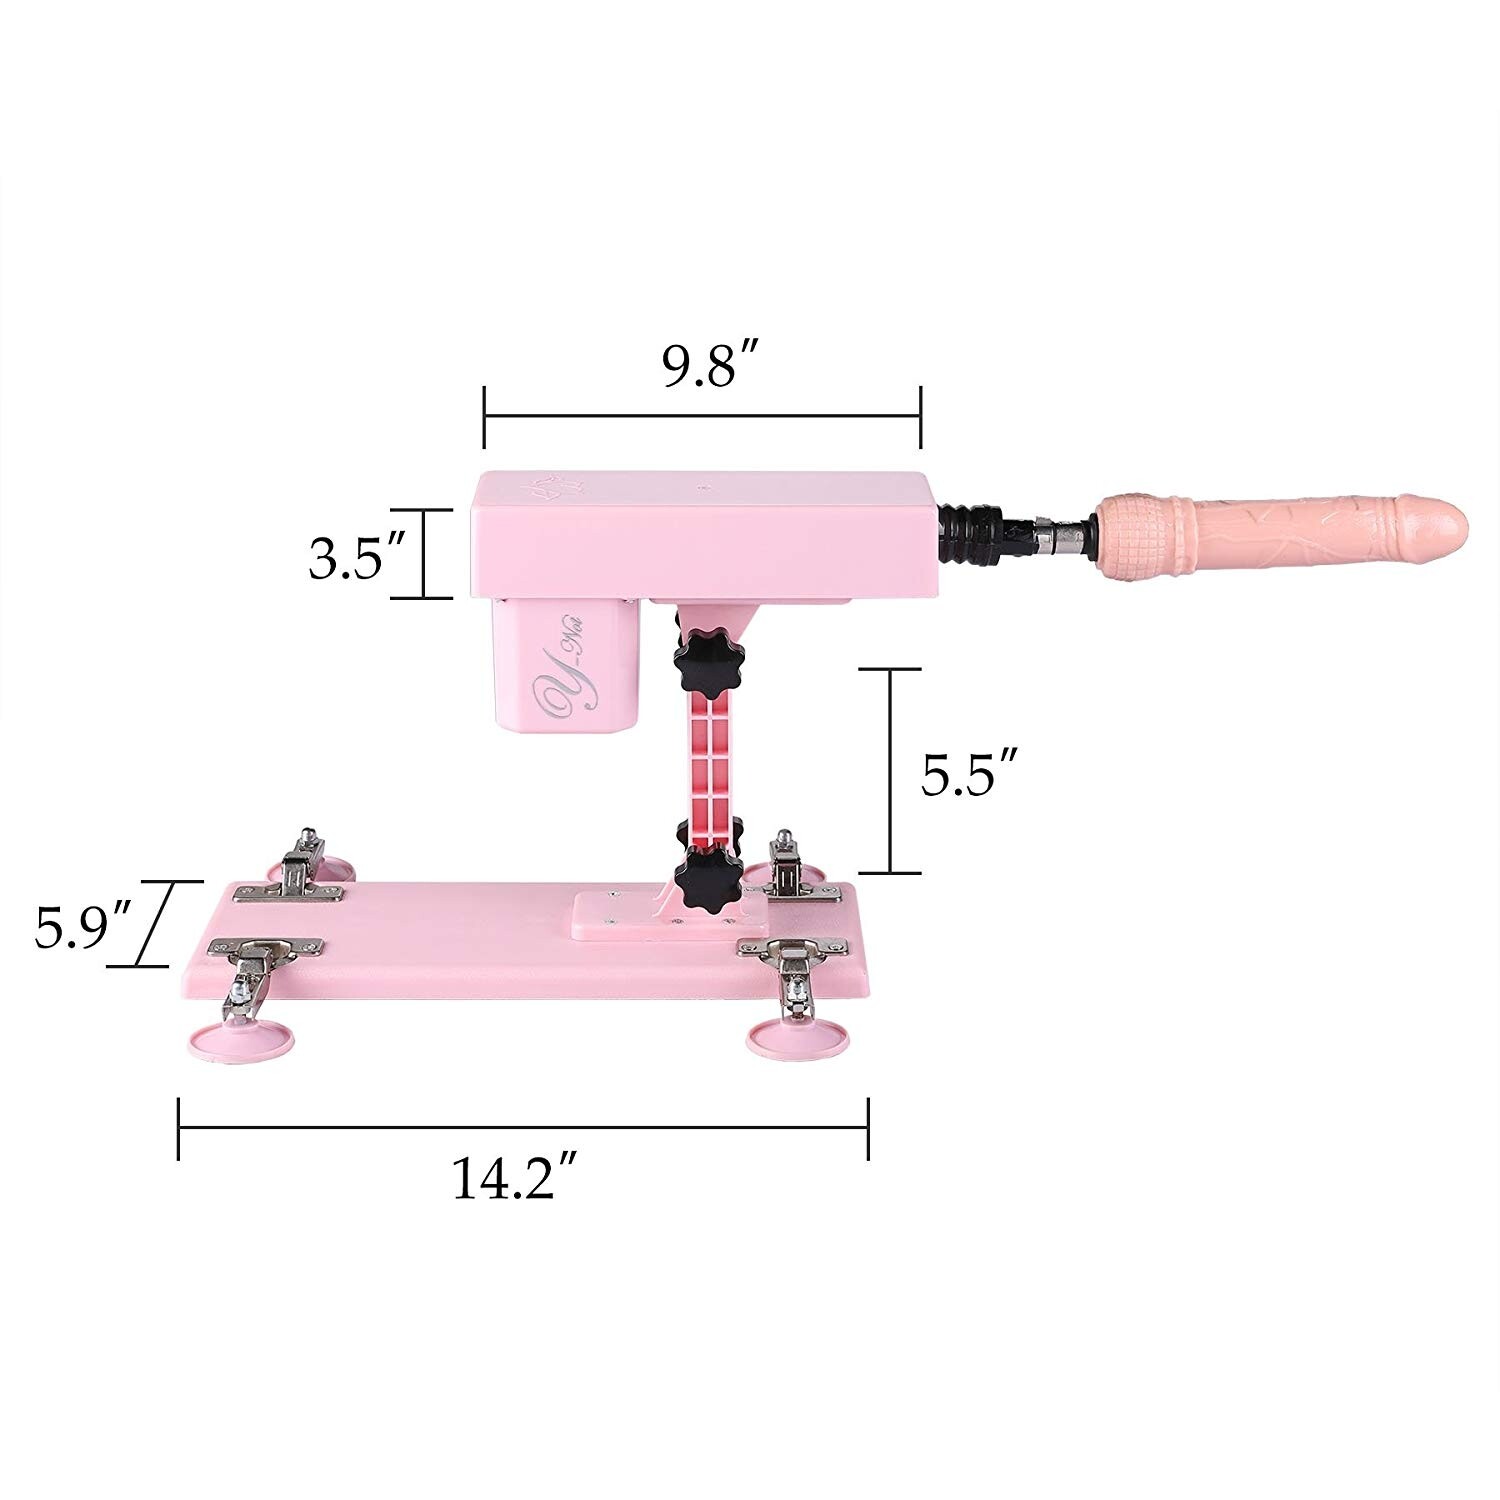 Machine automatique de sexe avec attachements de gode 5PCS pour les femmes rose